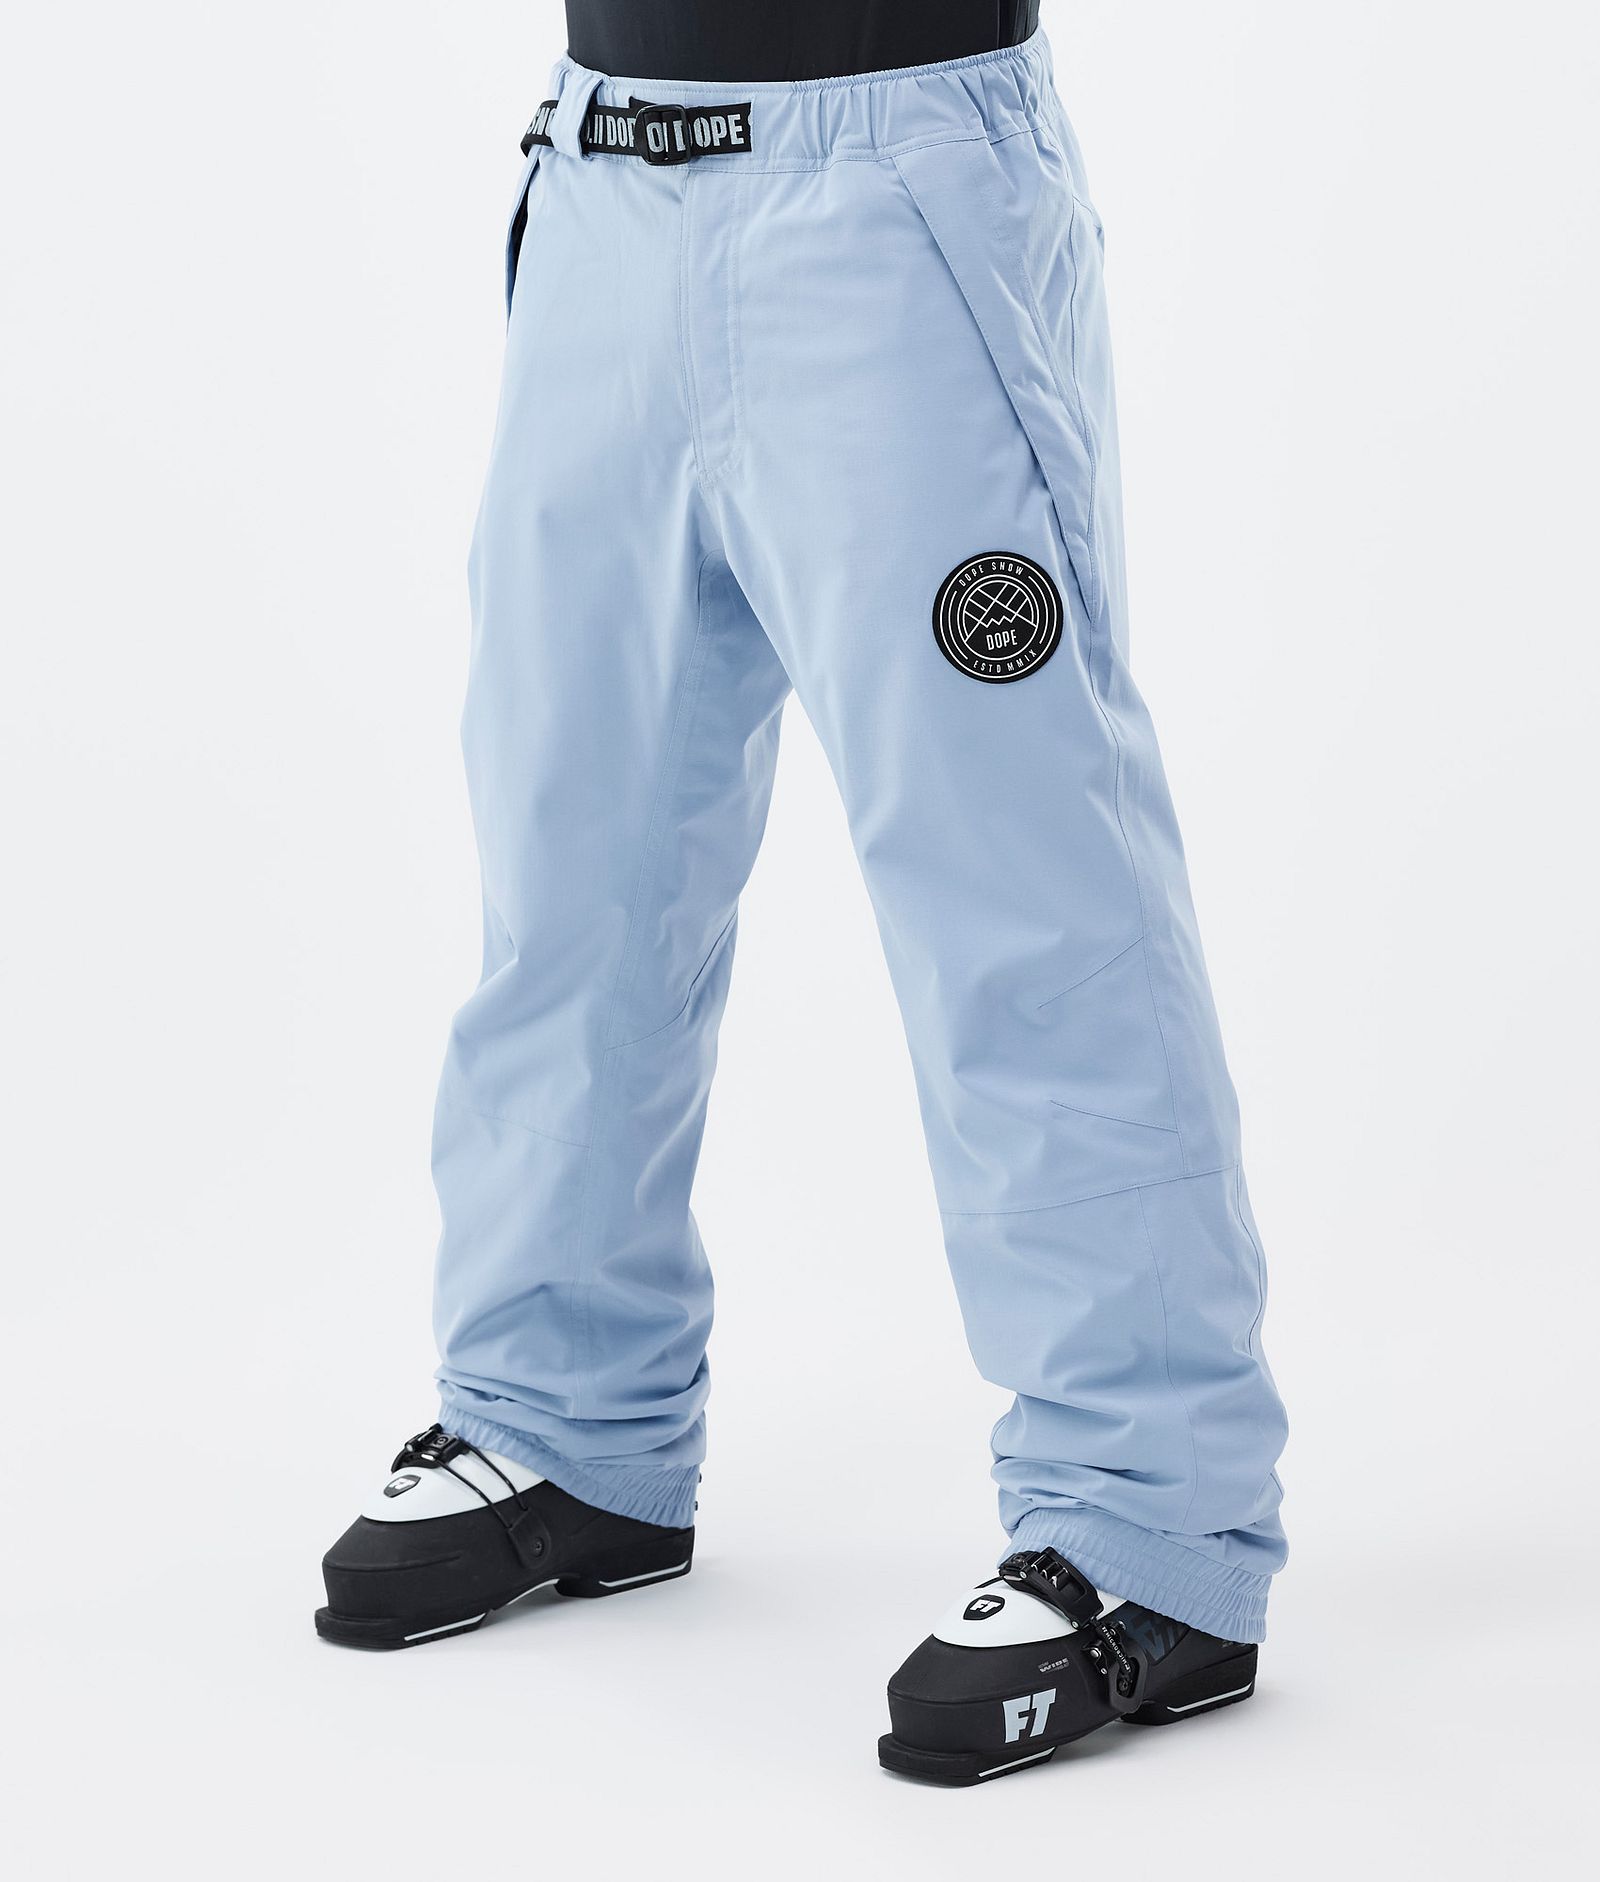 Blizzard Pantalon de Ski Homme Light Blue, Image 1 sur 5